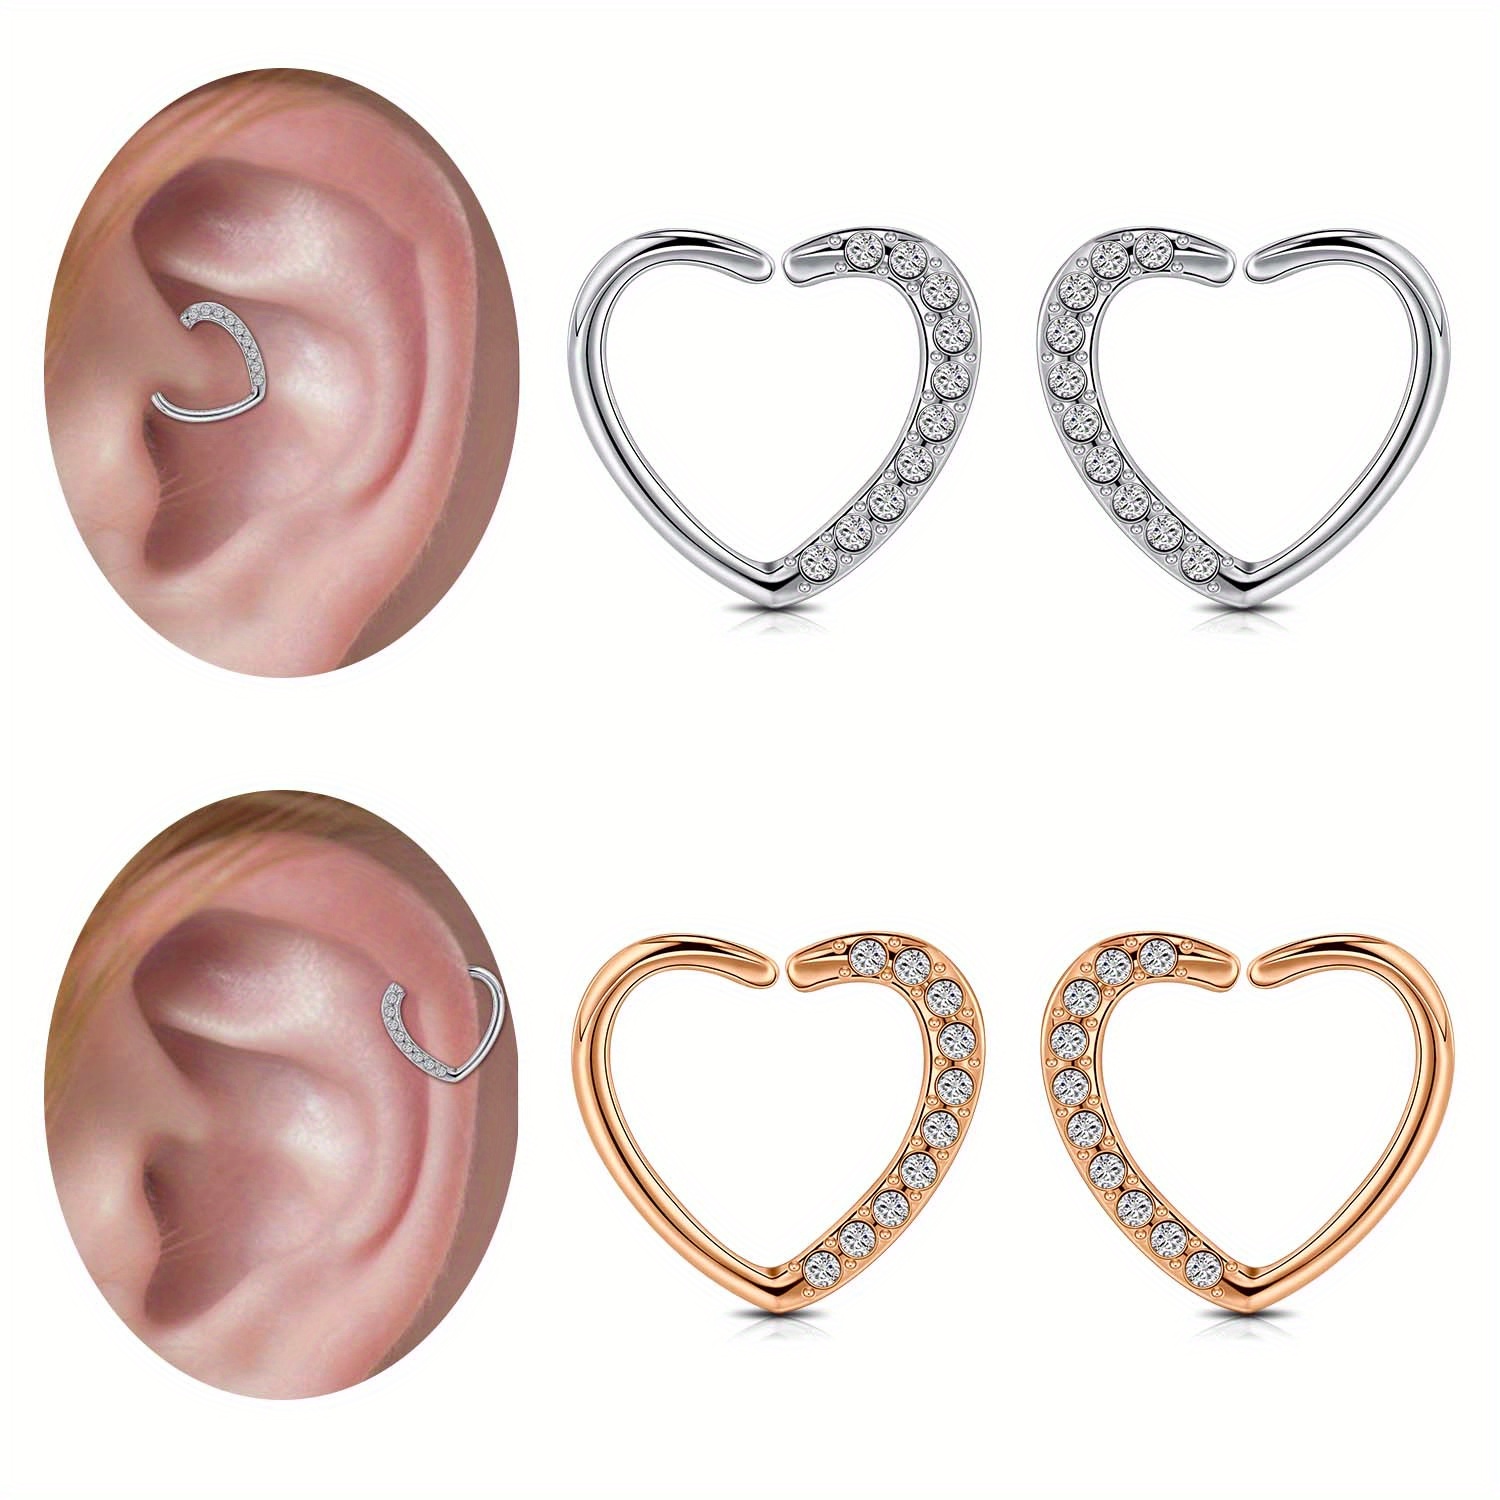 

1pc 16g Heart Shaped Hoop Earrings, Cartilage Helix Daith Earring Stainless Steel Tragus Piercing Earrings Silvery Rose Golden Ear Piercing Jewelry 10mm